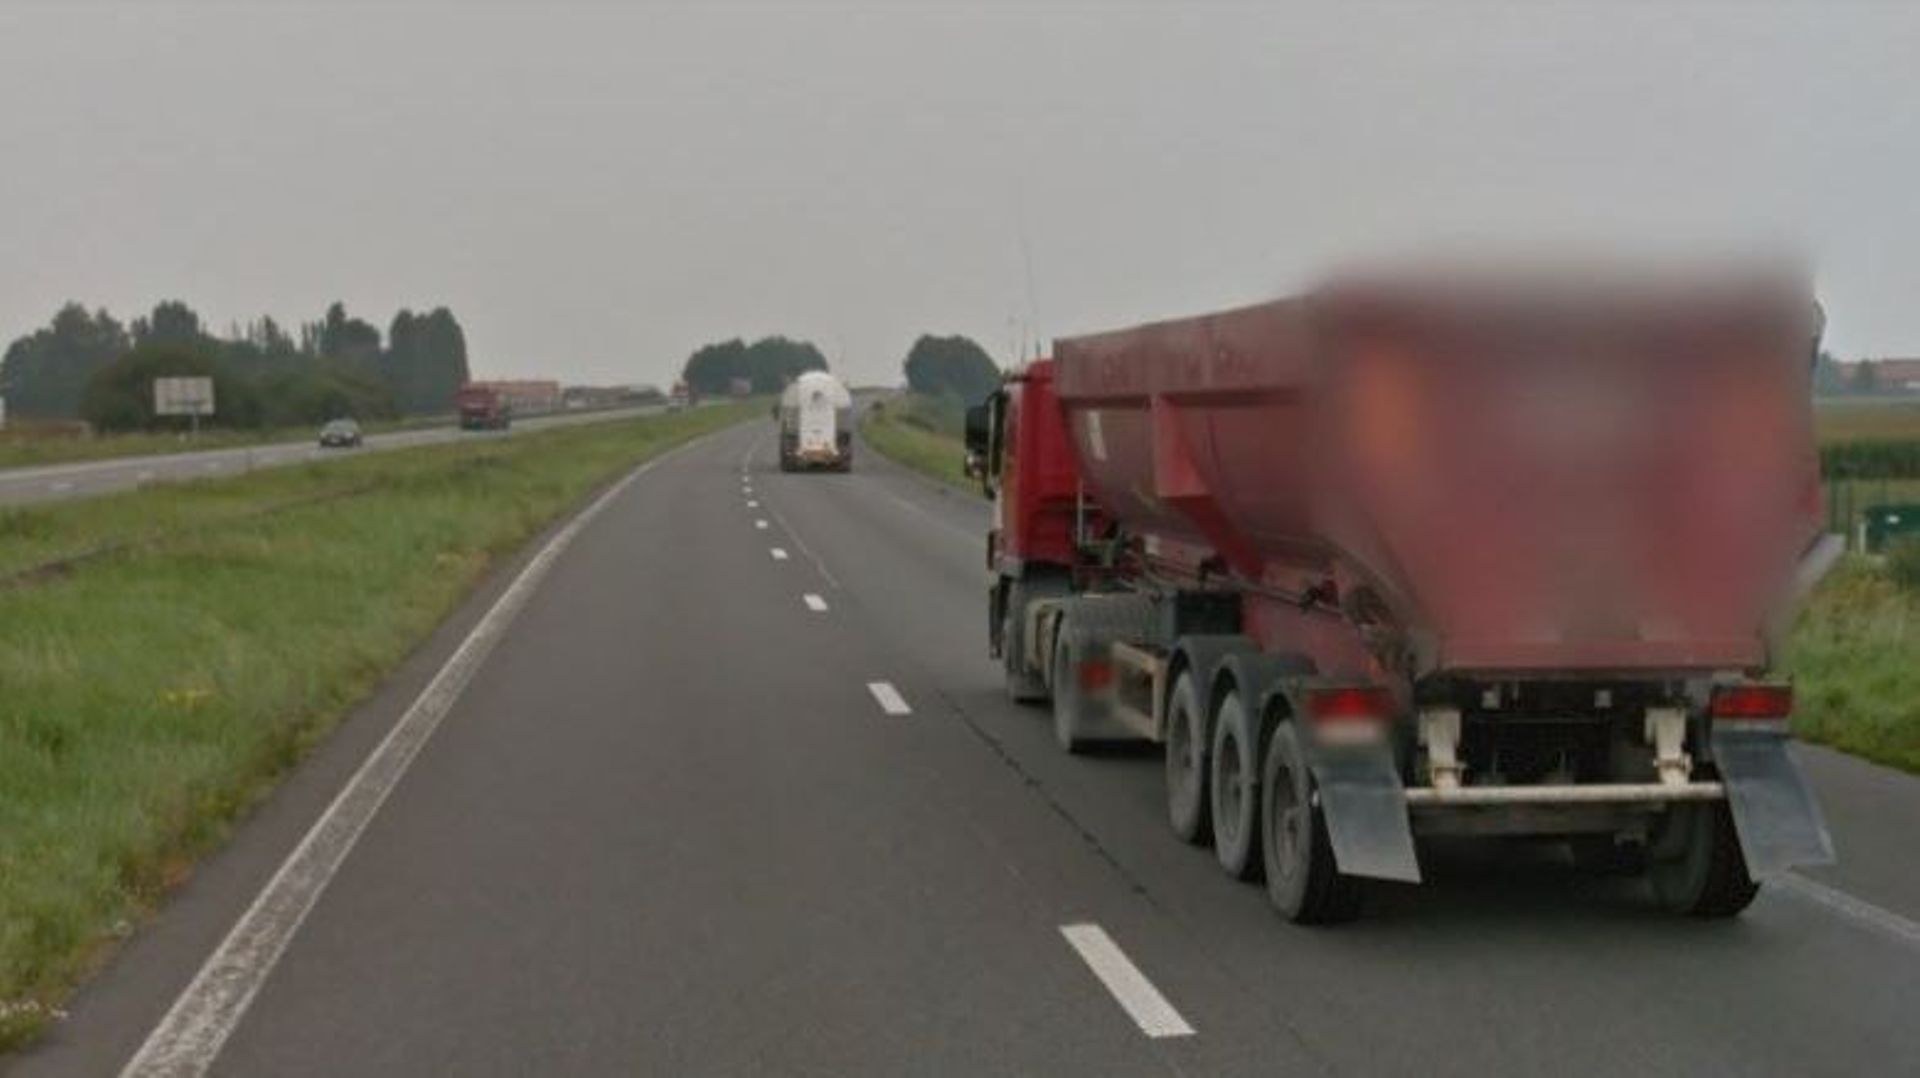 Blocage de l'A17 Tournai-Courtrai suite à une collision entre deux camions